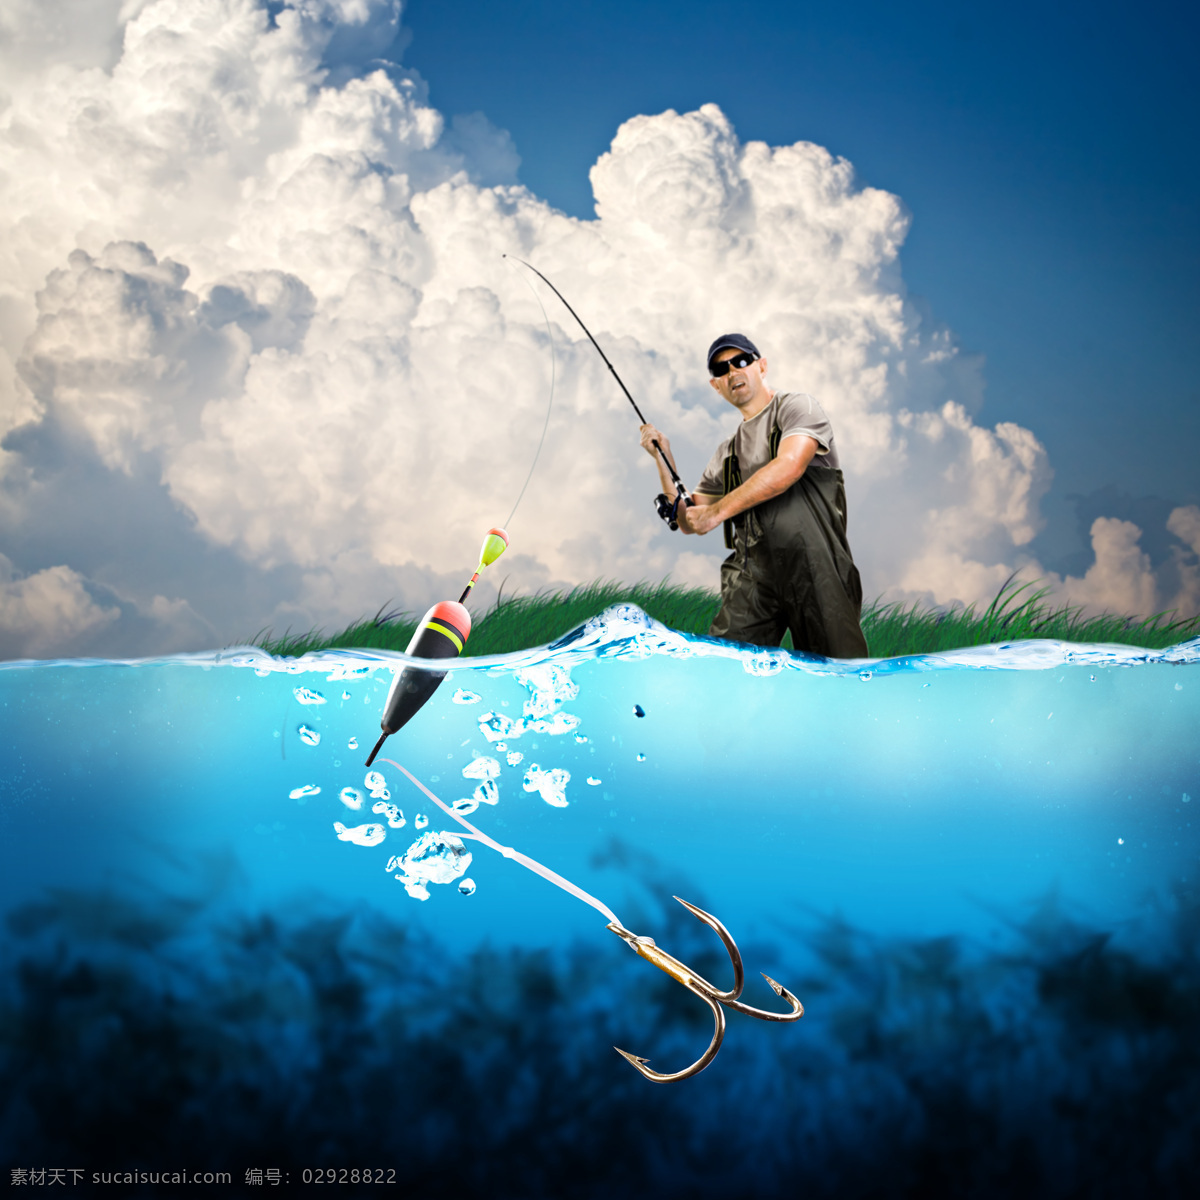 钓鱼的男性 钓鱼的男人 钓鱼 钓鱼钩 鱼钩 渔具 水纹 水中生物 生物世界 黑色